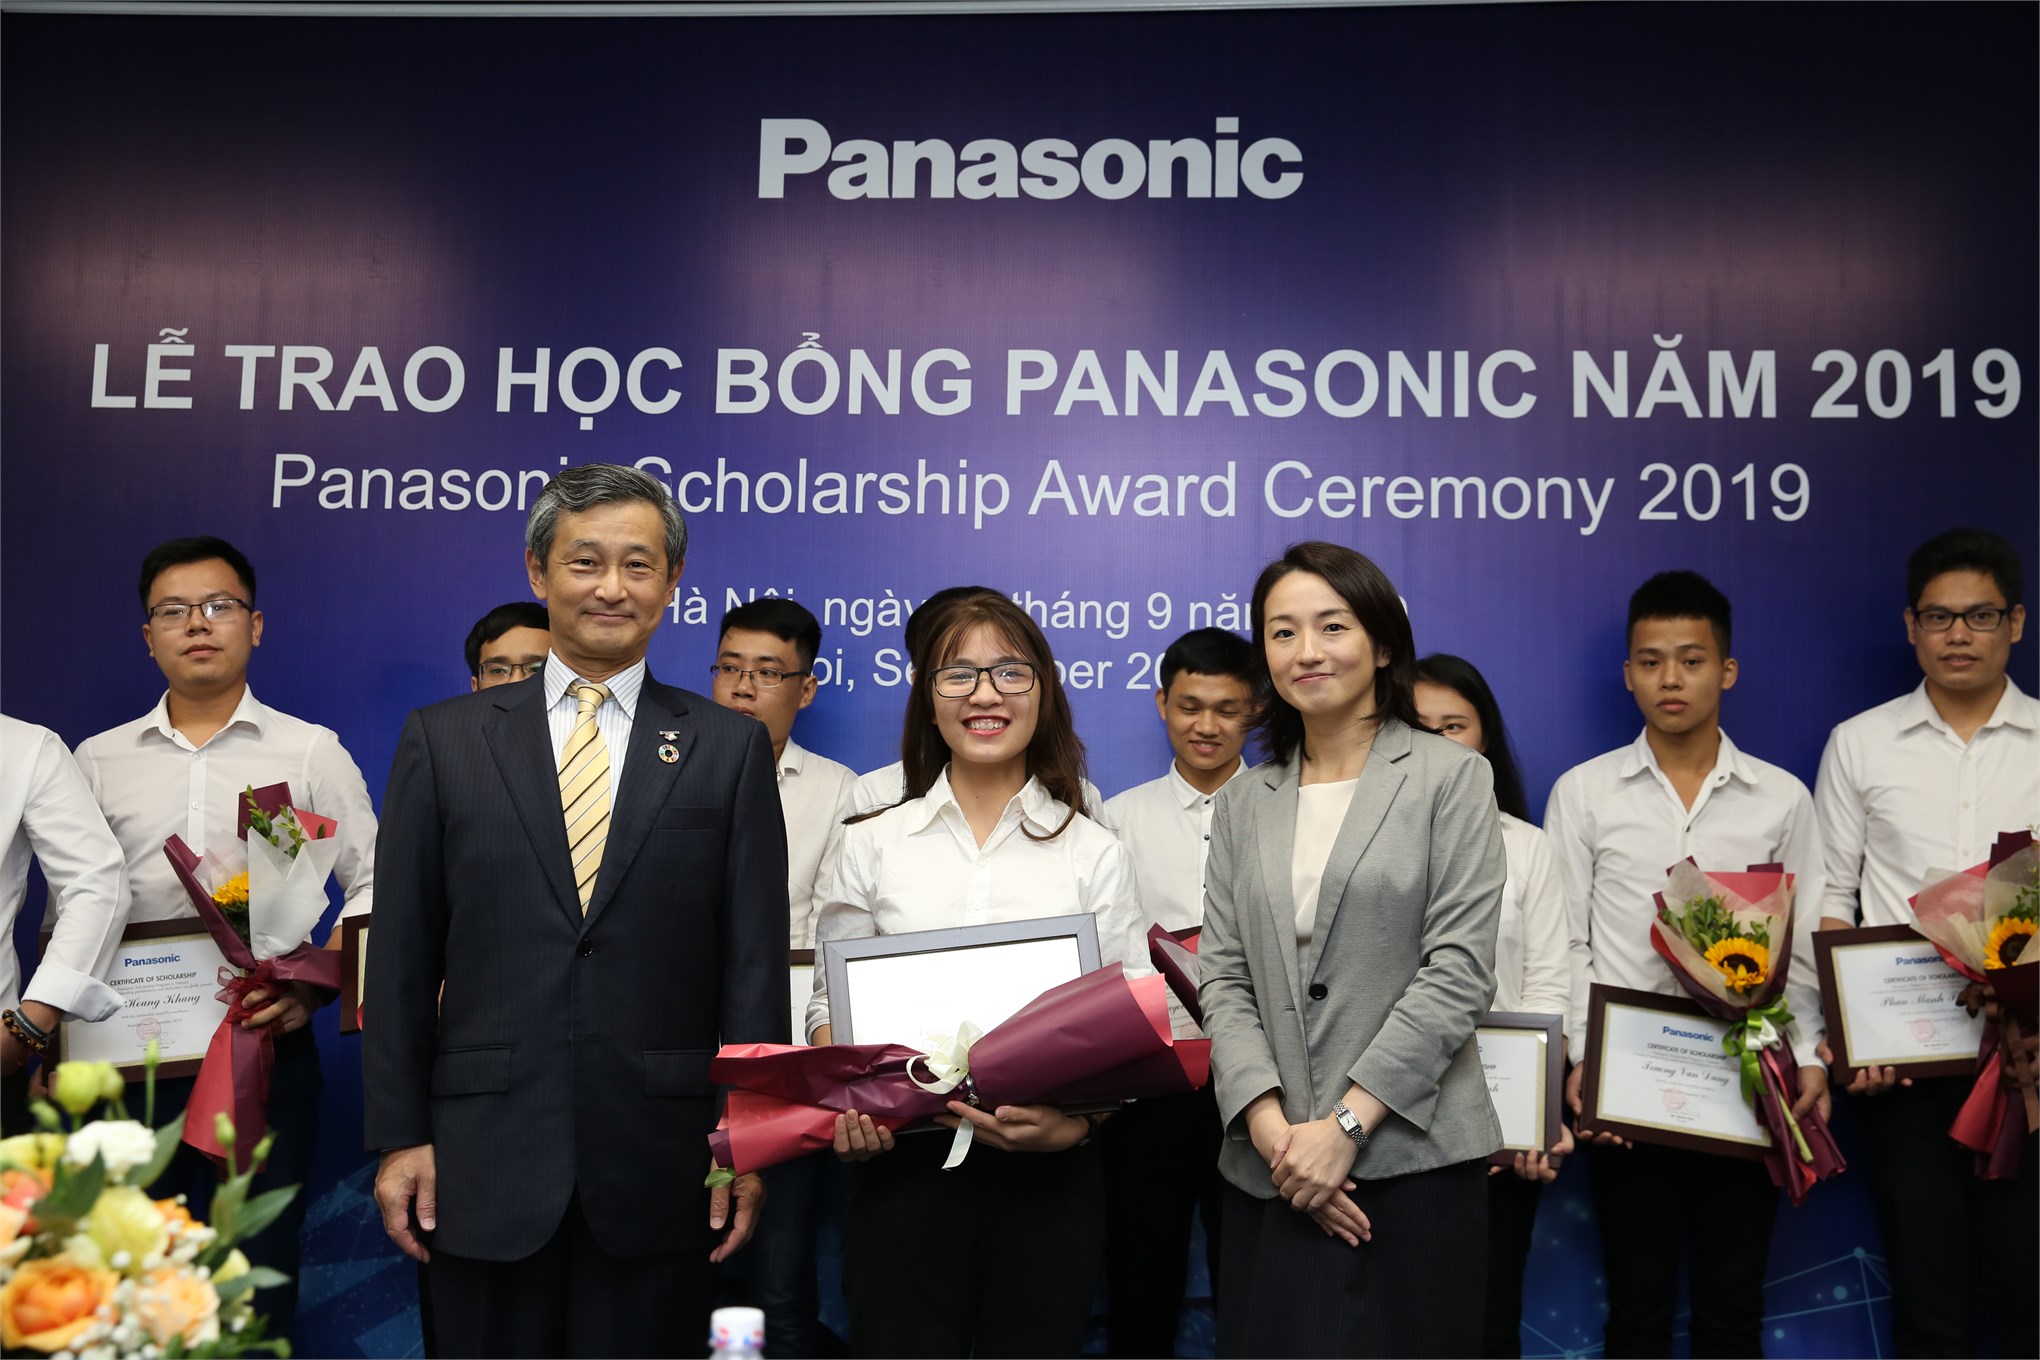 Nữ Sinh viên Đại học Công nghiệp Hà Nội là một trong 15 sinh viên cả nước nhận học bổng Panasonic 2019